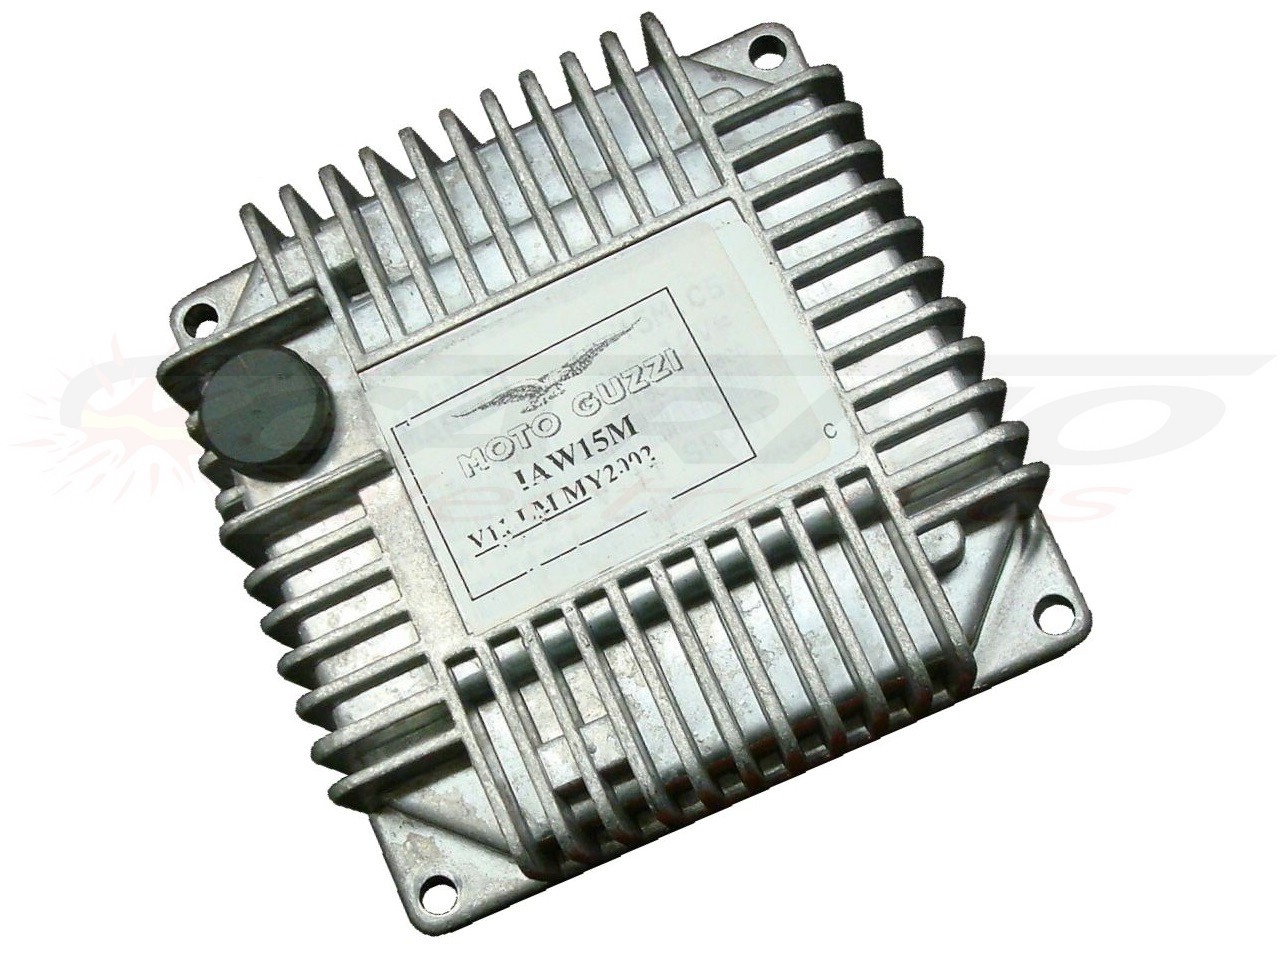 California Aluminium (Magneti Marelli IAW 15M) ECU ECM CDI motor computer unit